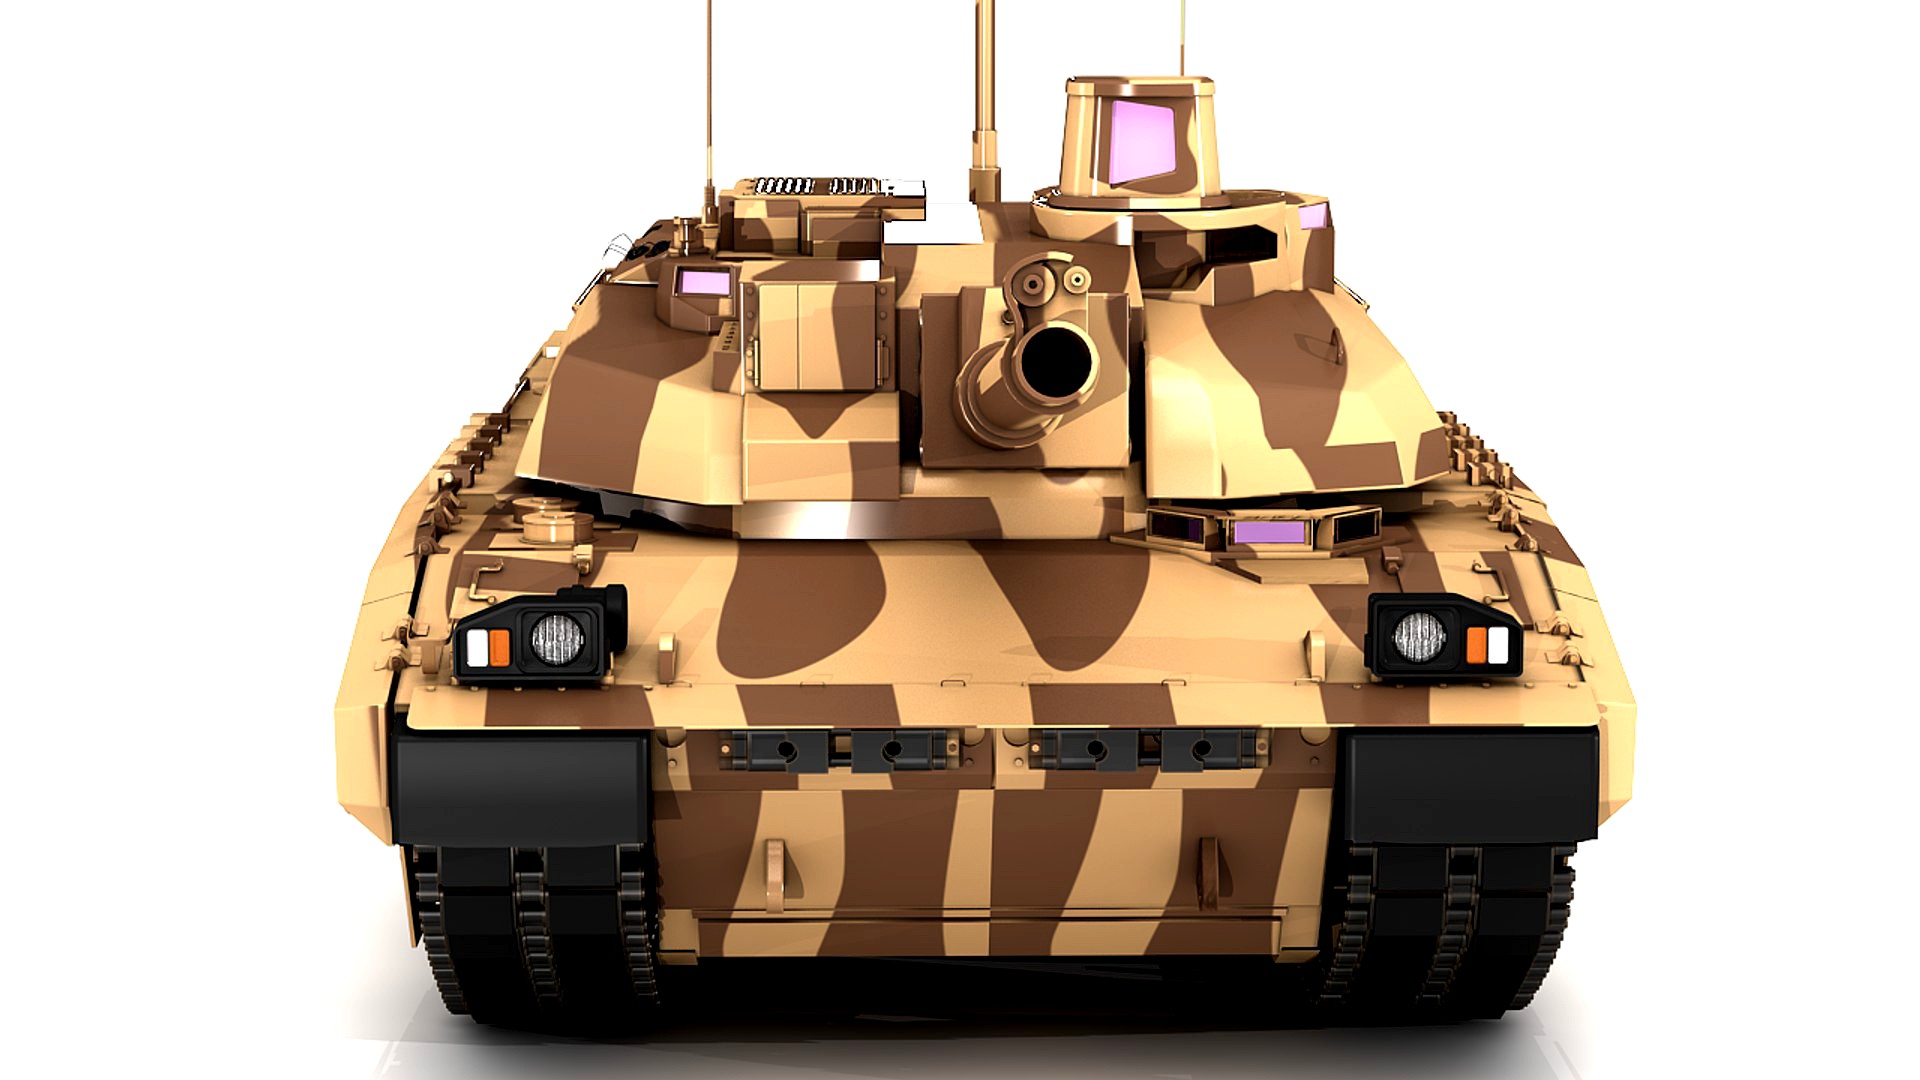 AMX-56 Leclerc 3D model